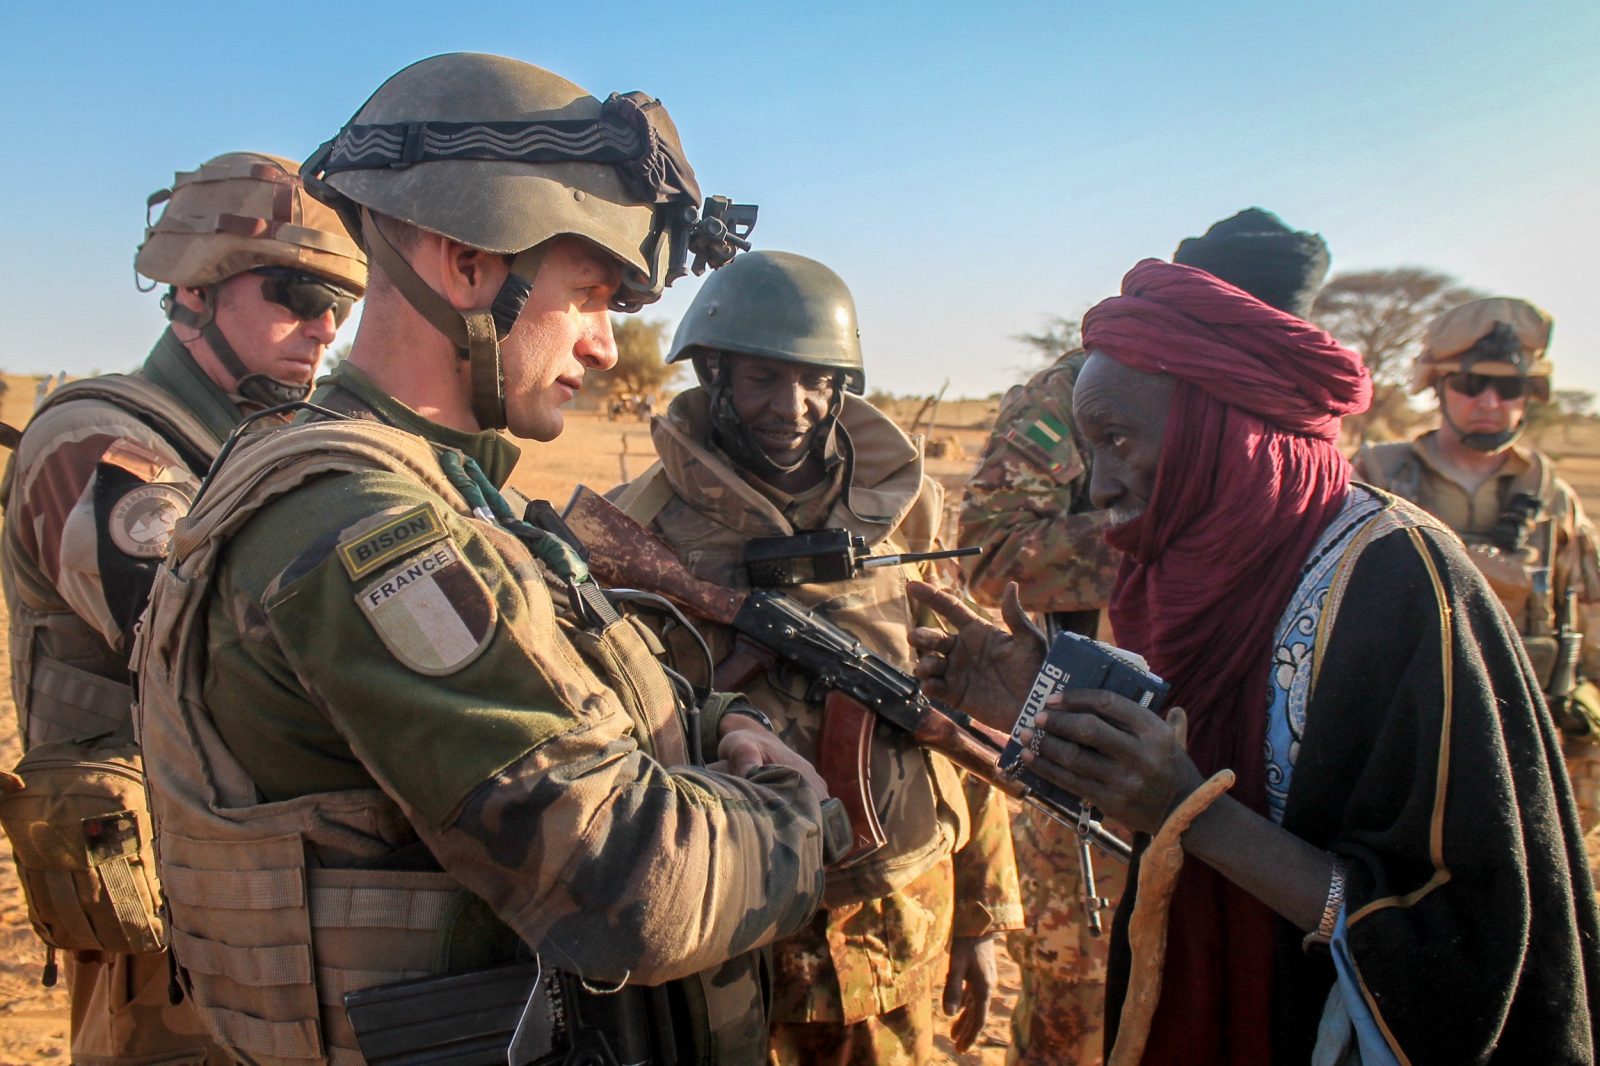 Francia perdió 13 soldados más en Mali